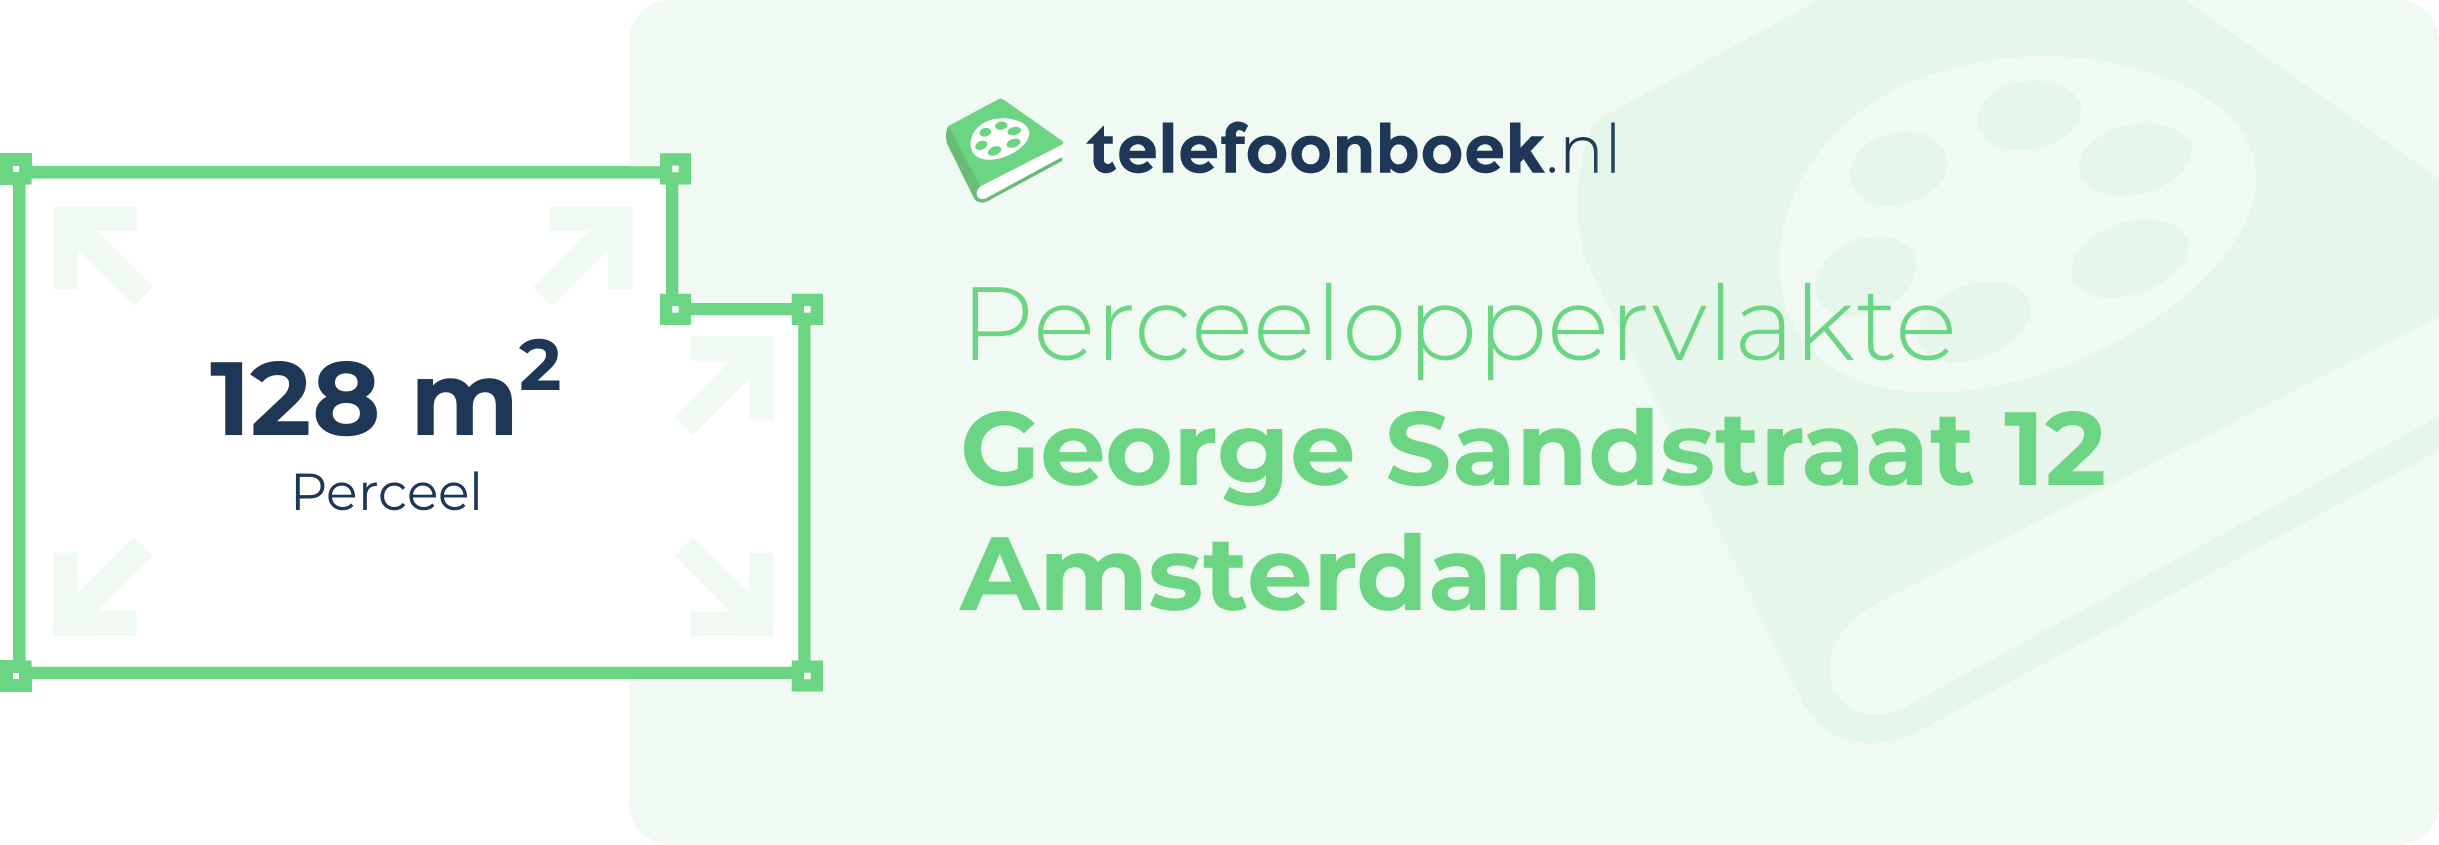 Perceeloppervlakte George Sandstraat 12 Amsterdam